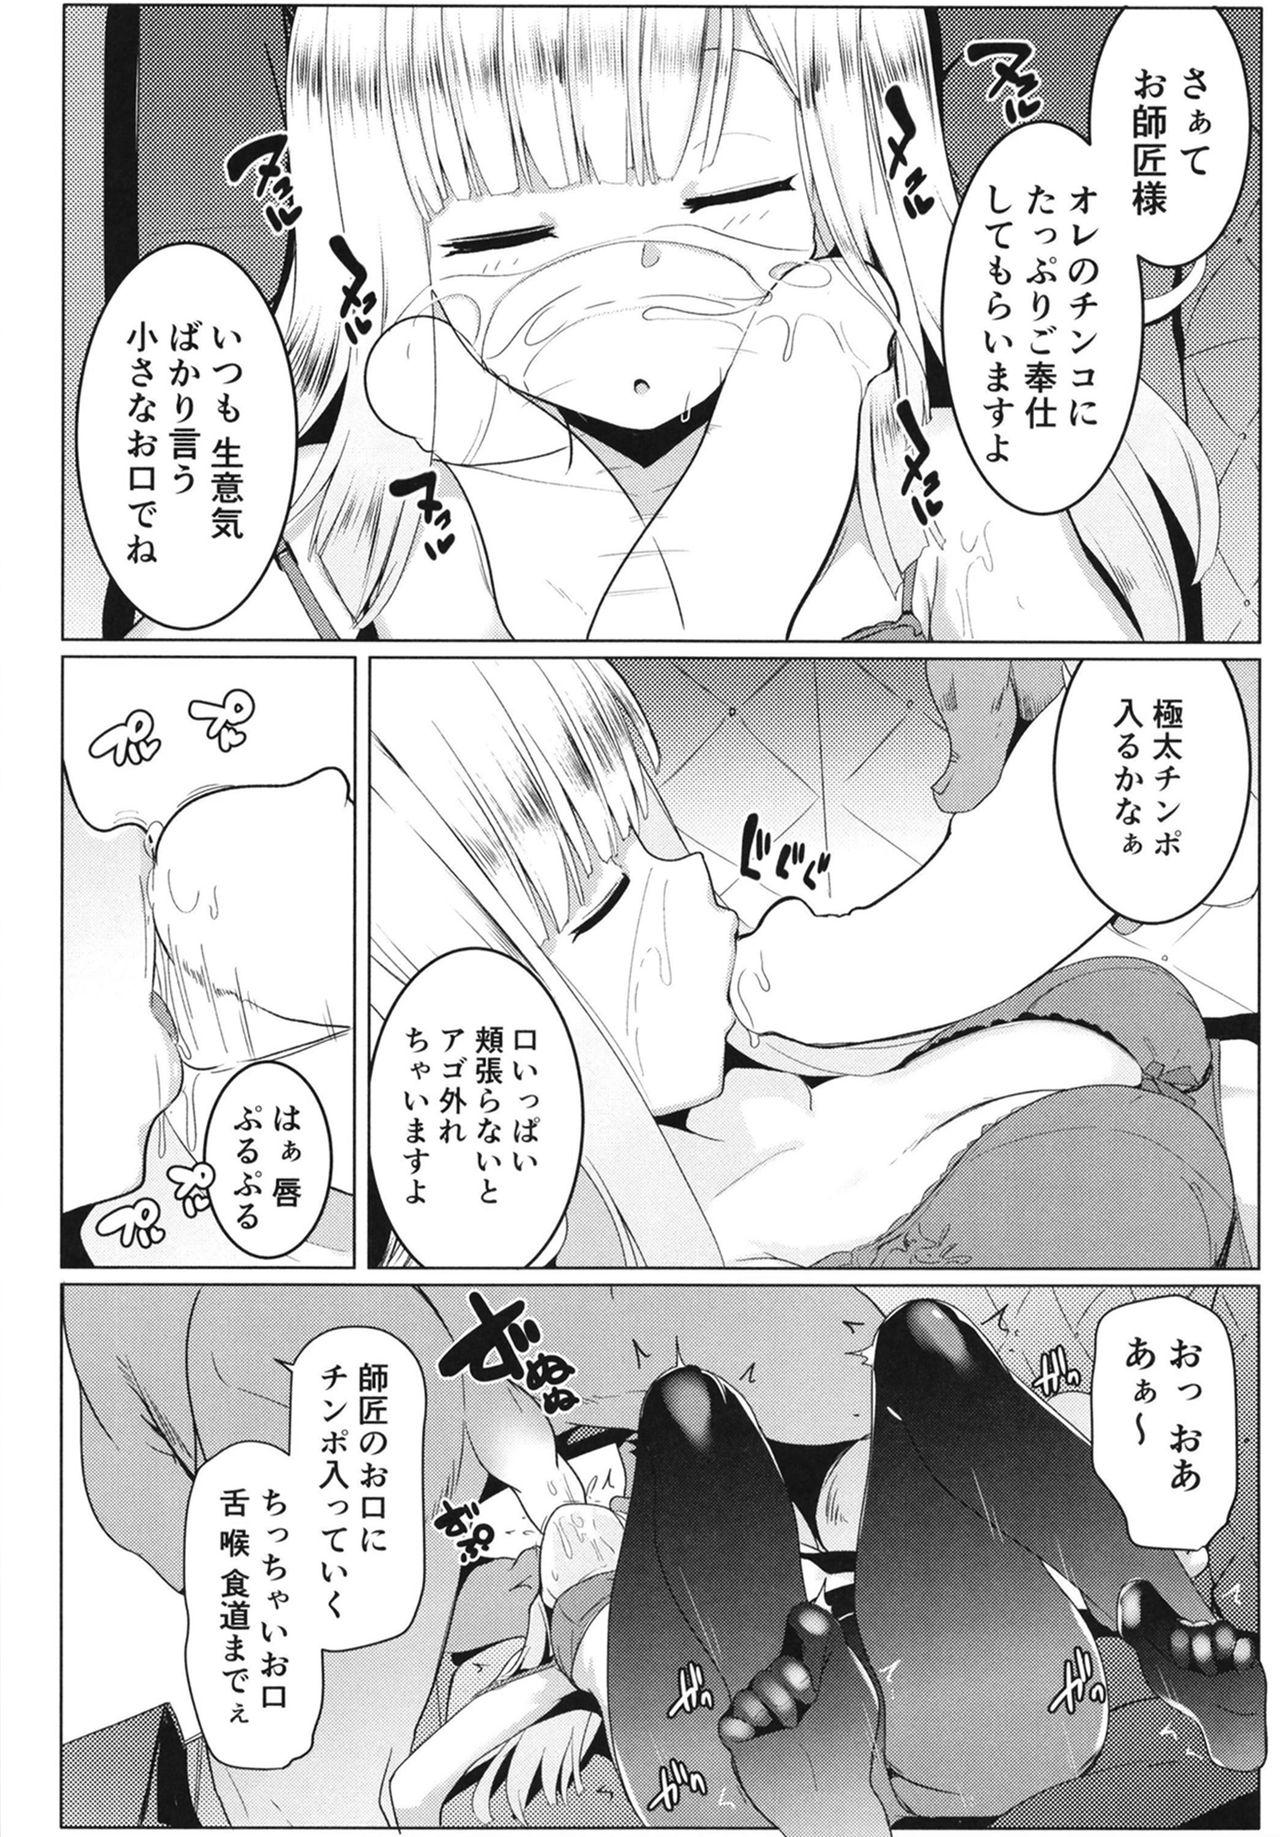 Pussysex Neoki no Shishou wa Tonikaku Eroi - Fate grand order Girlnextdoor - Page 10